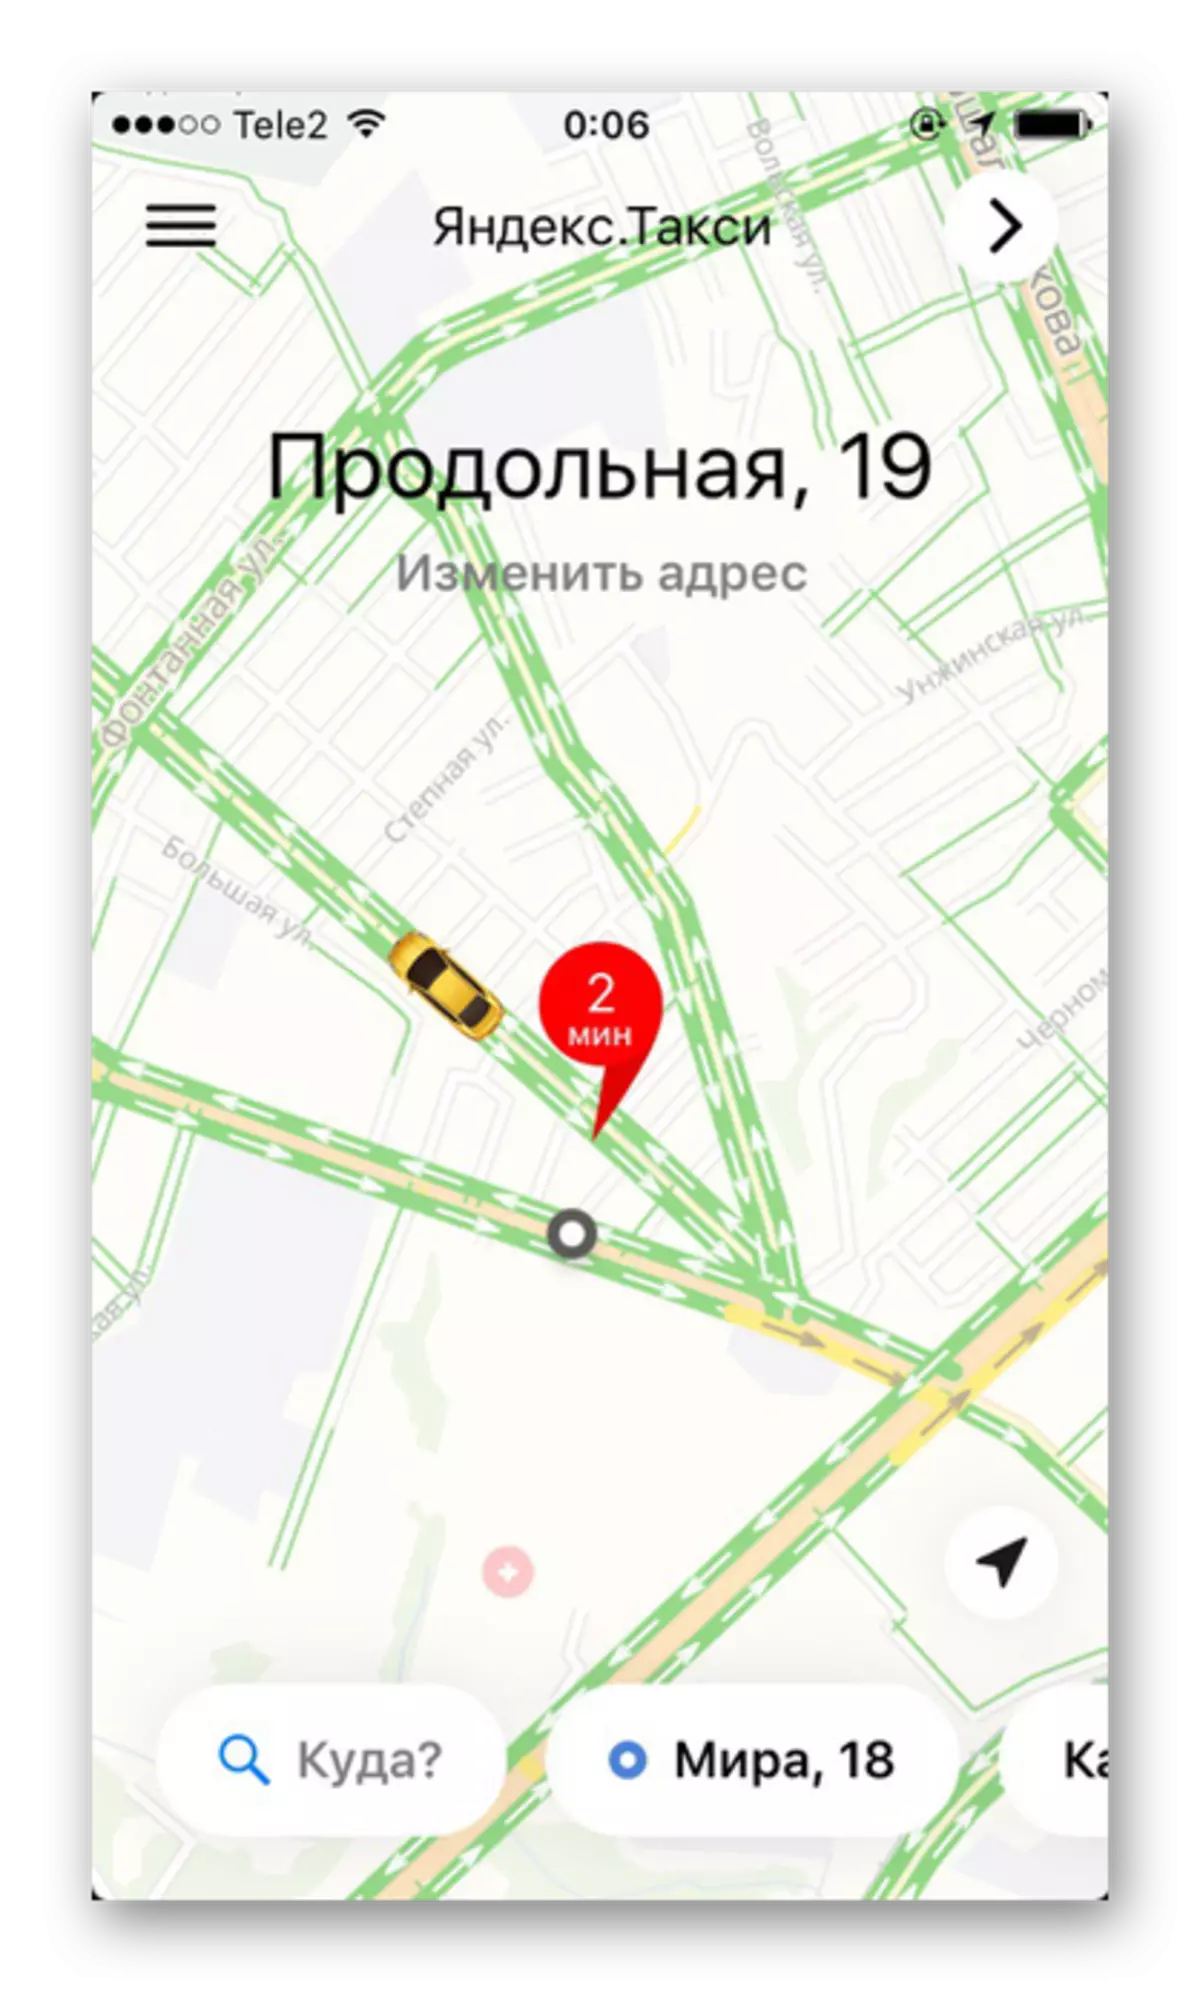 Verkeersopstoppingen en Wegwerkbelasting in Yandex.taxi inschakelen op iPhone